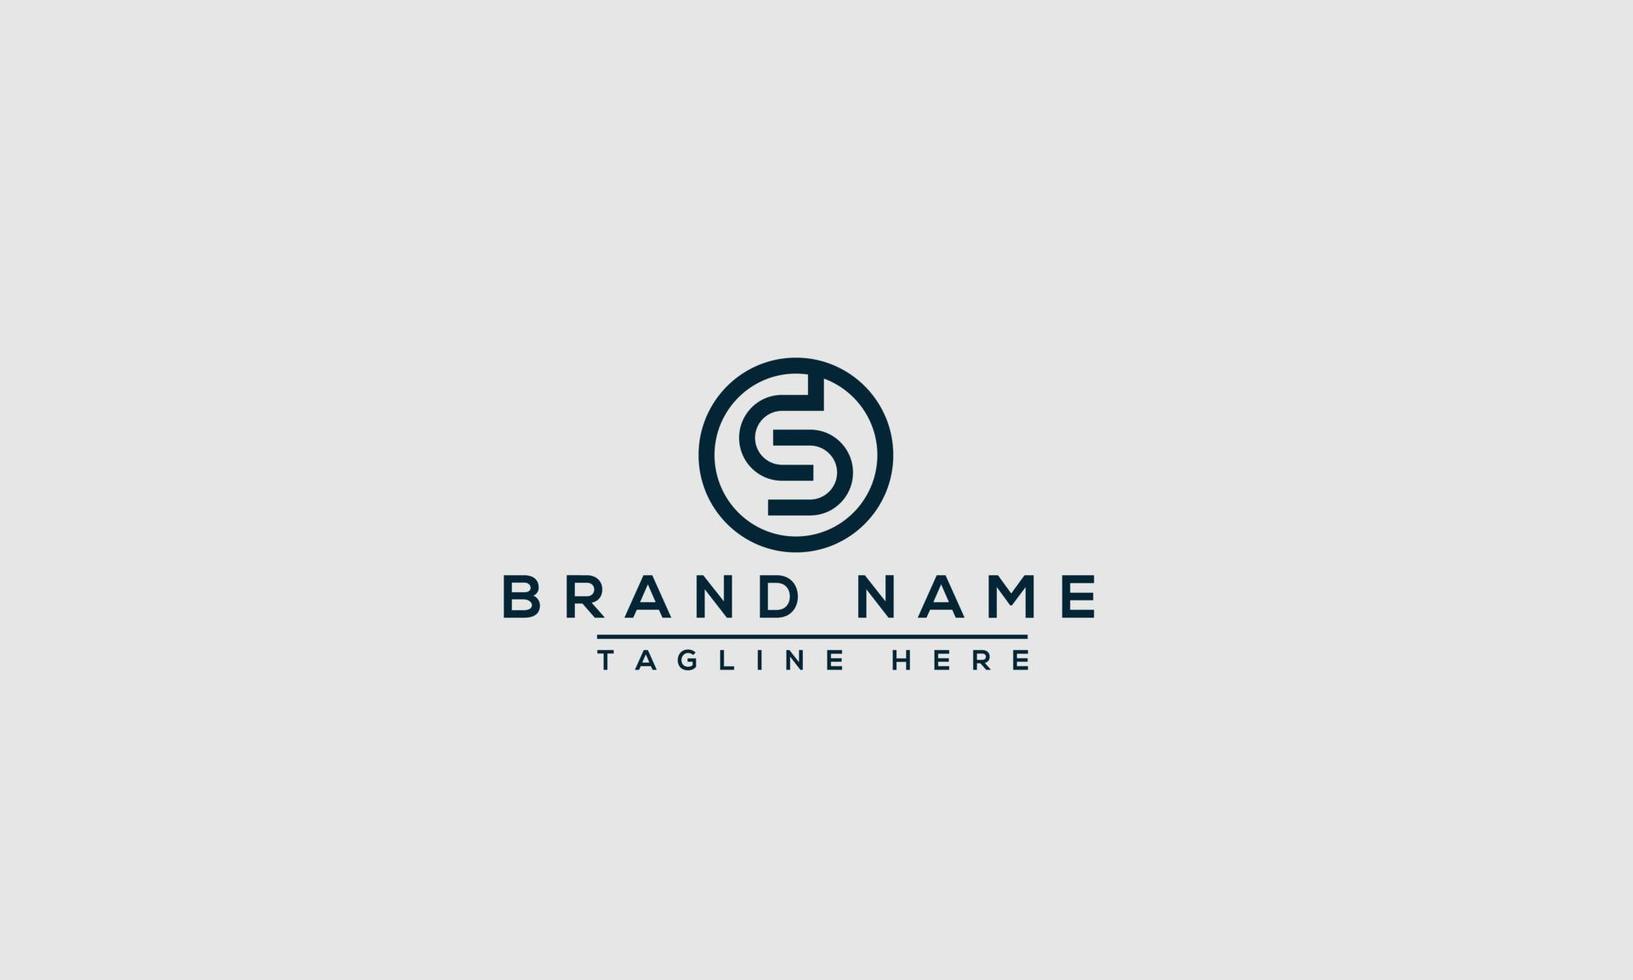 elemento de branding gráfico de vetor de modelo de design de logotipo sd.